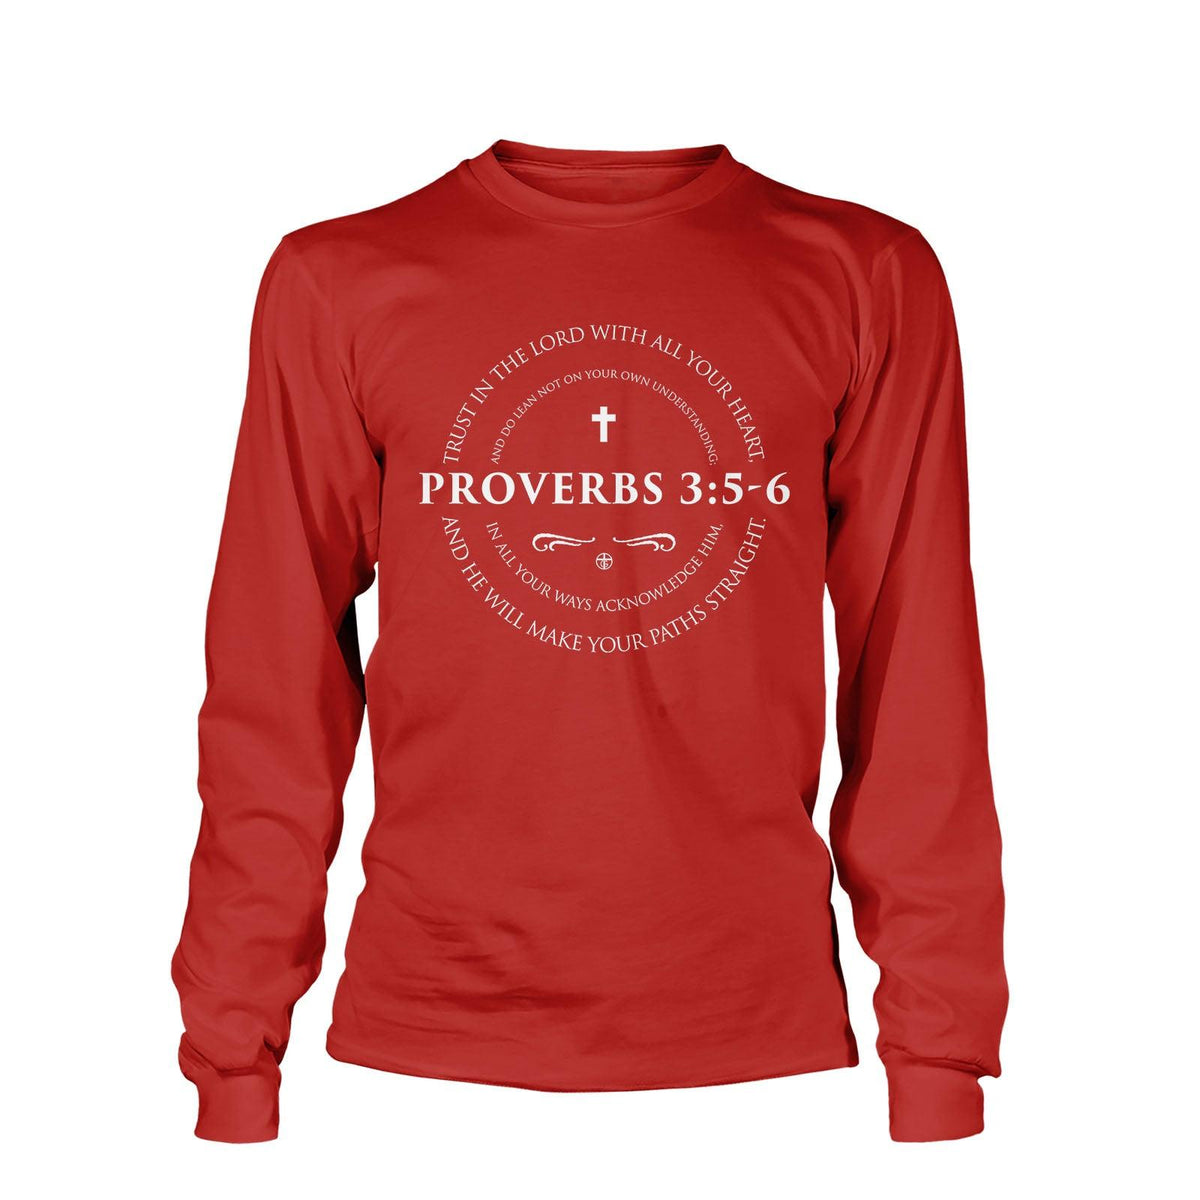 Proverbs 3:5-6 Long Sleeve T-Shirt